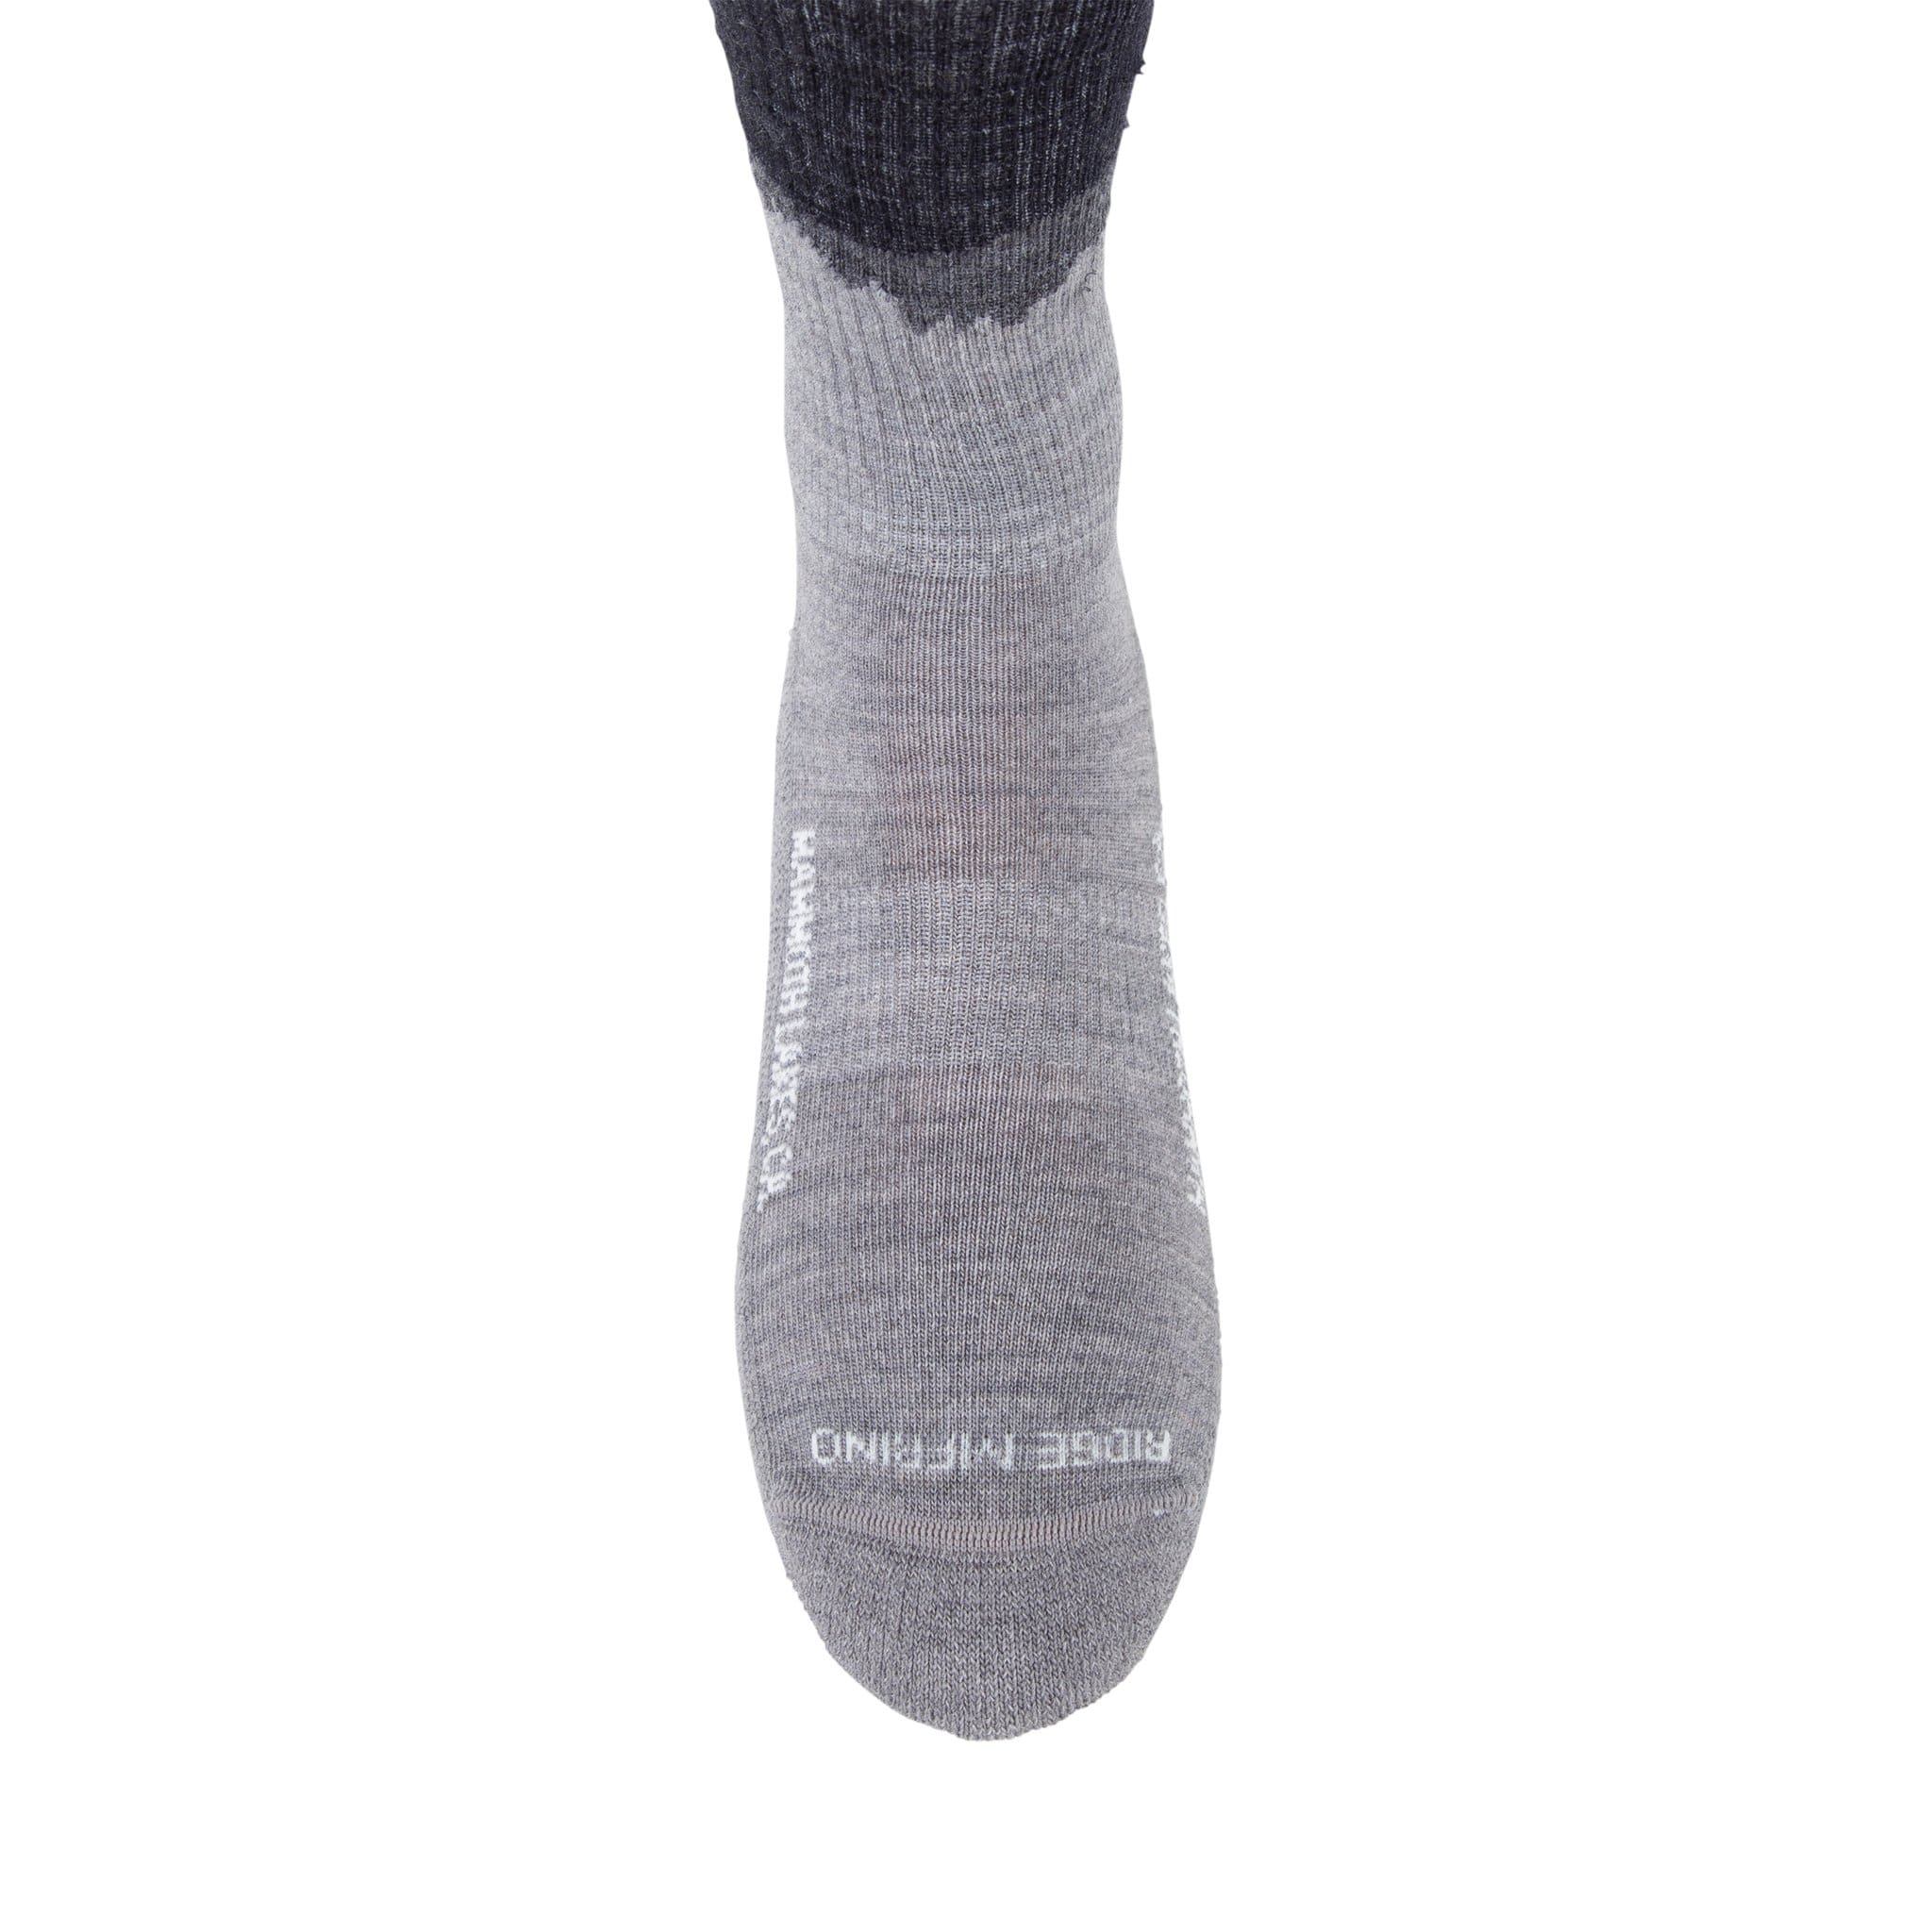 MERIWOOL Merino Wool Hiking Socks … curated on LTK